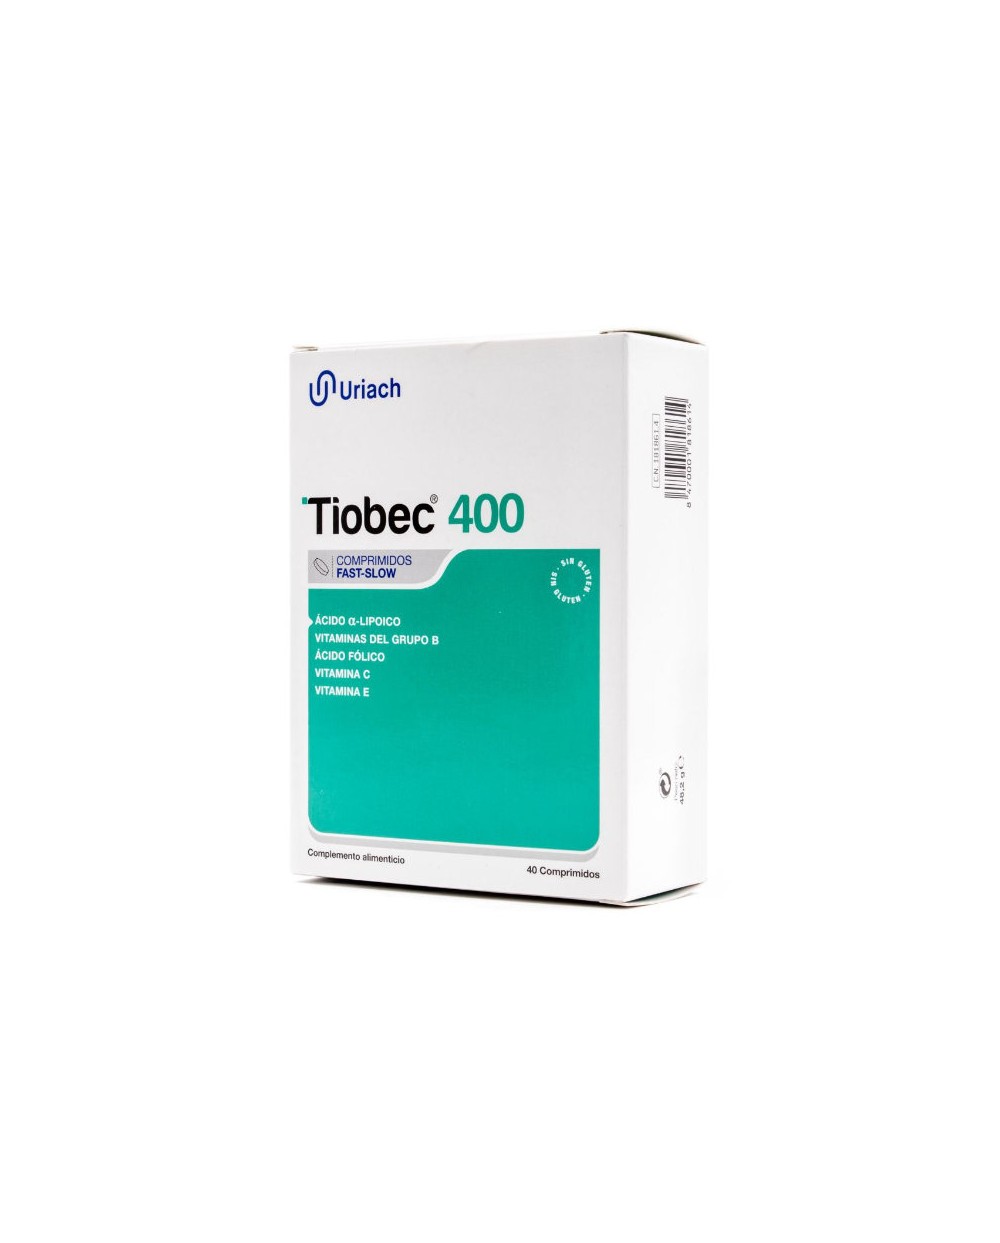 Tiobec 400 40 Comprimidos Fast Solw Uriach - complemento alimenticio